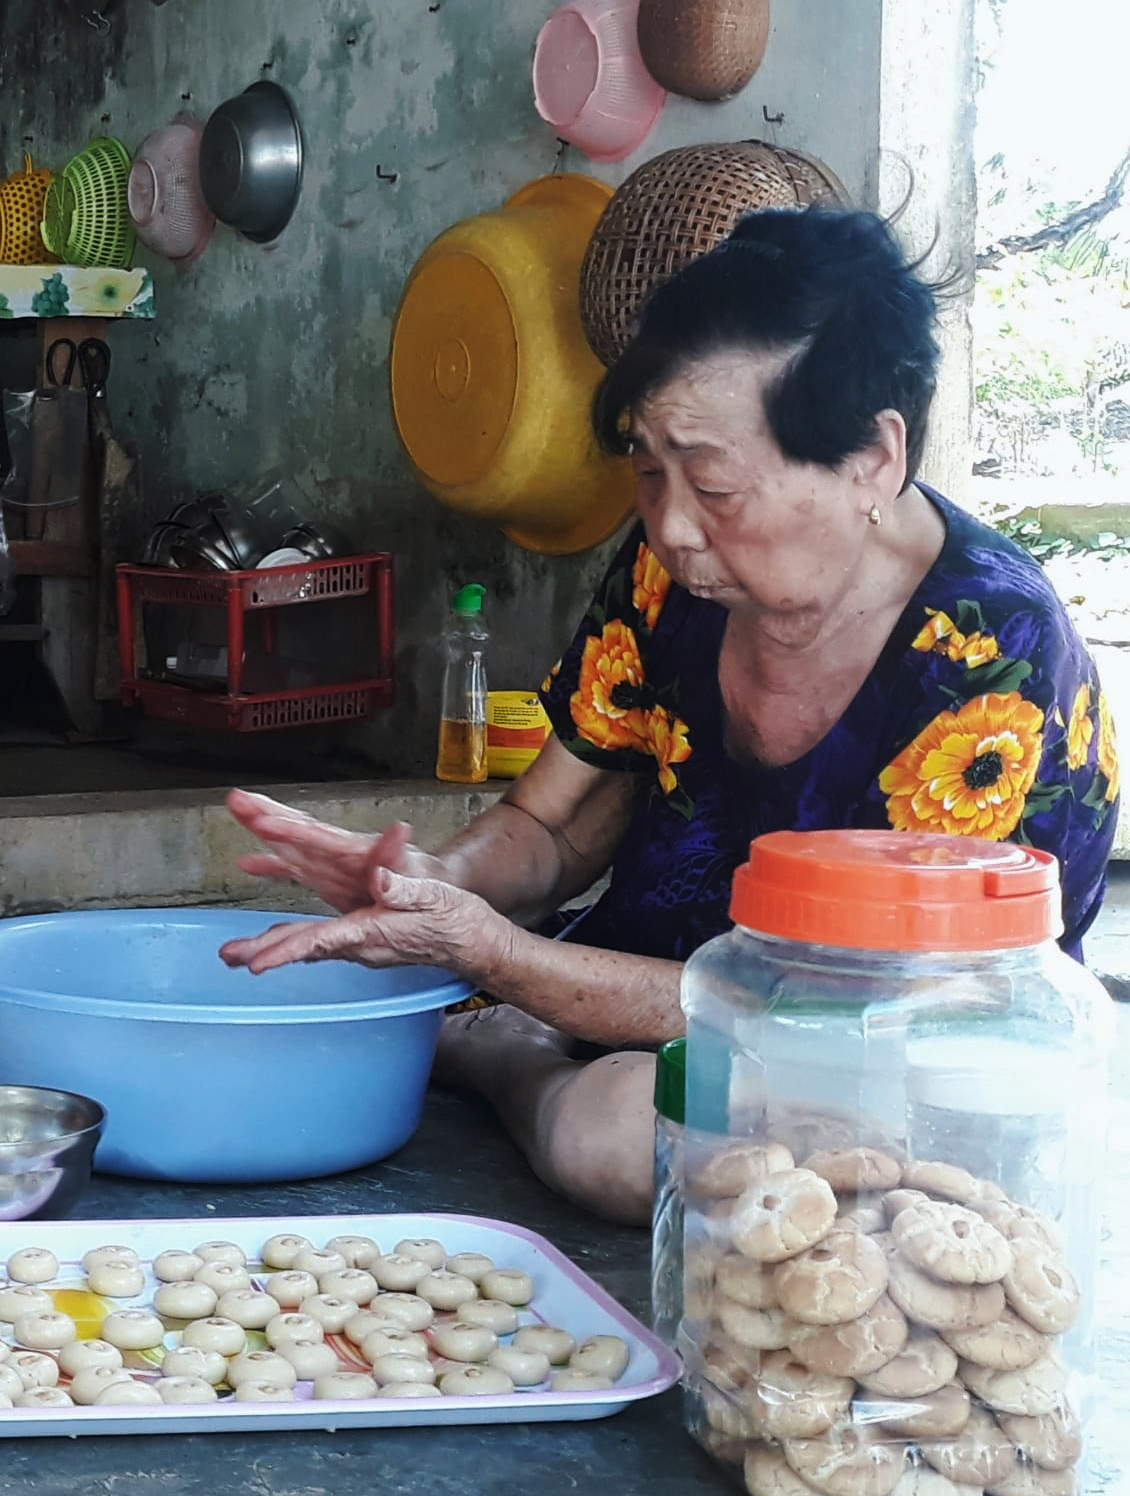 Bà của anh Điền lớn tuổi nhưng vẫn tham gia vào quá trình làm bánh. Anh Điền nói hiện bánh mứt có thể mua ngoài tiệm, chợ, siêu thị nhưng không khí gia đình quây quần làm bánh thú vị hơn rất nhiều. 